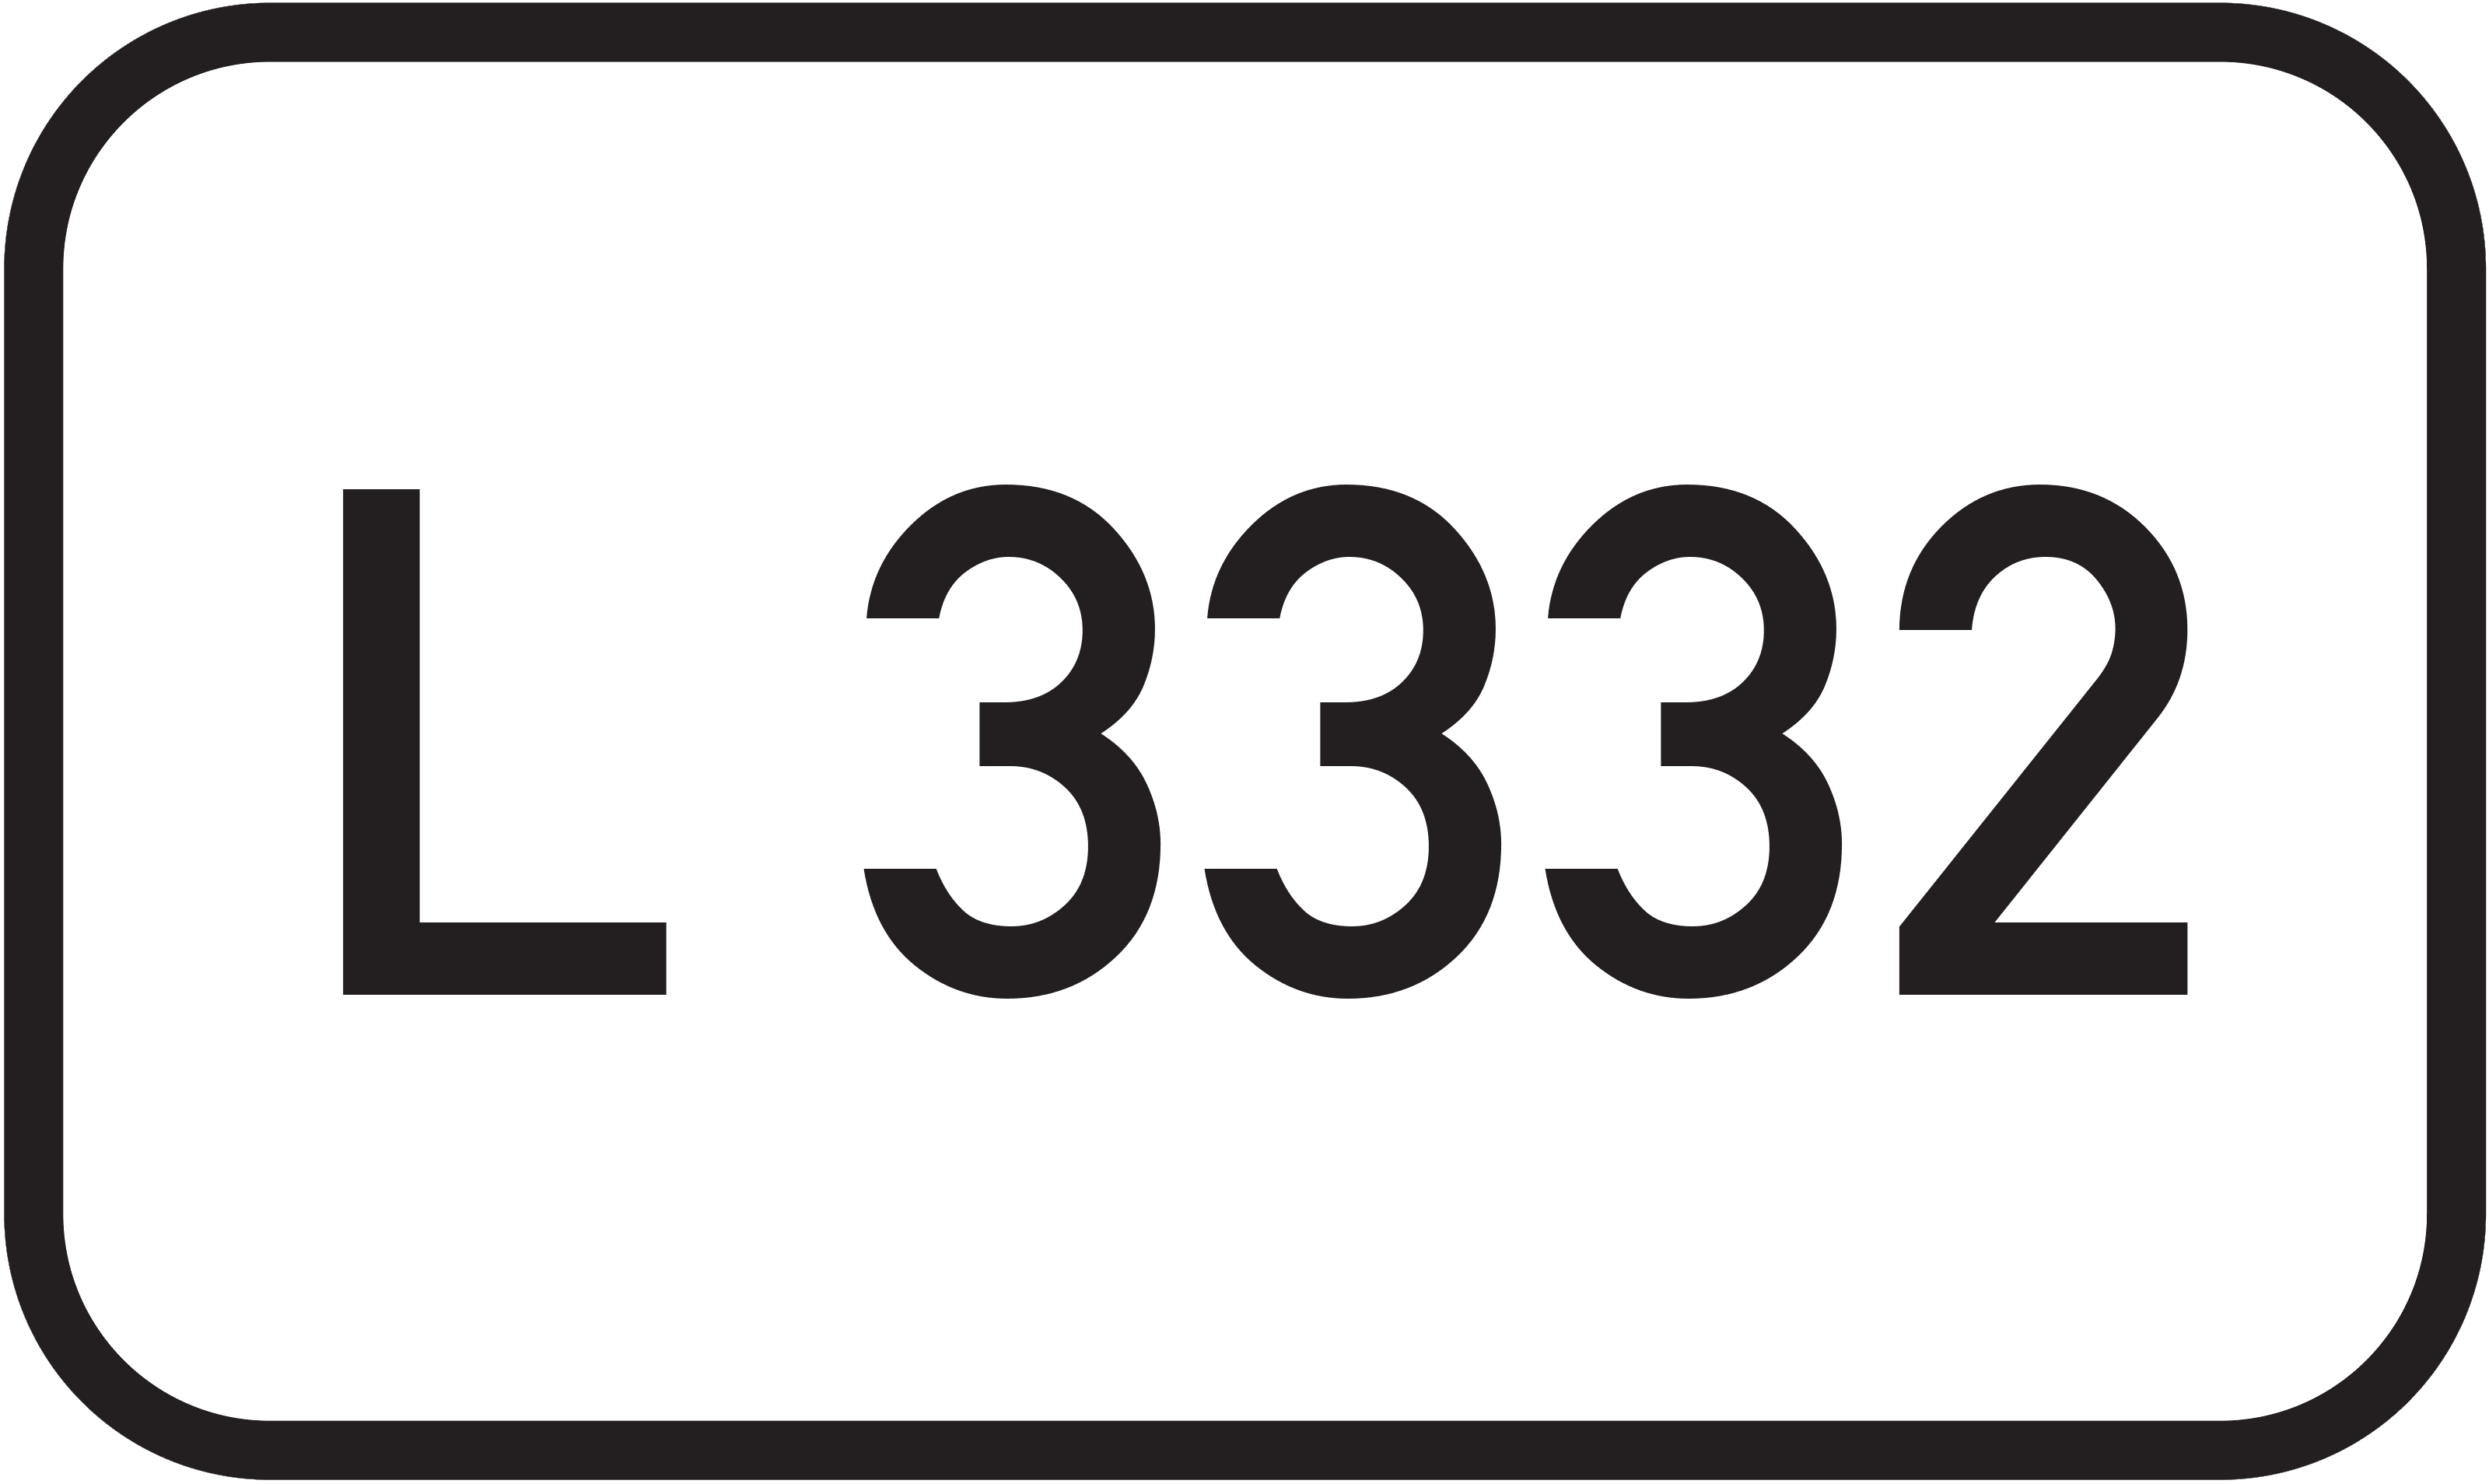 Landesstraße L 3332